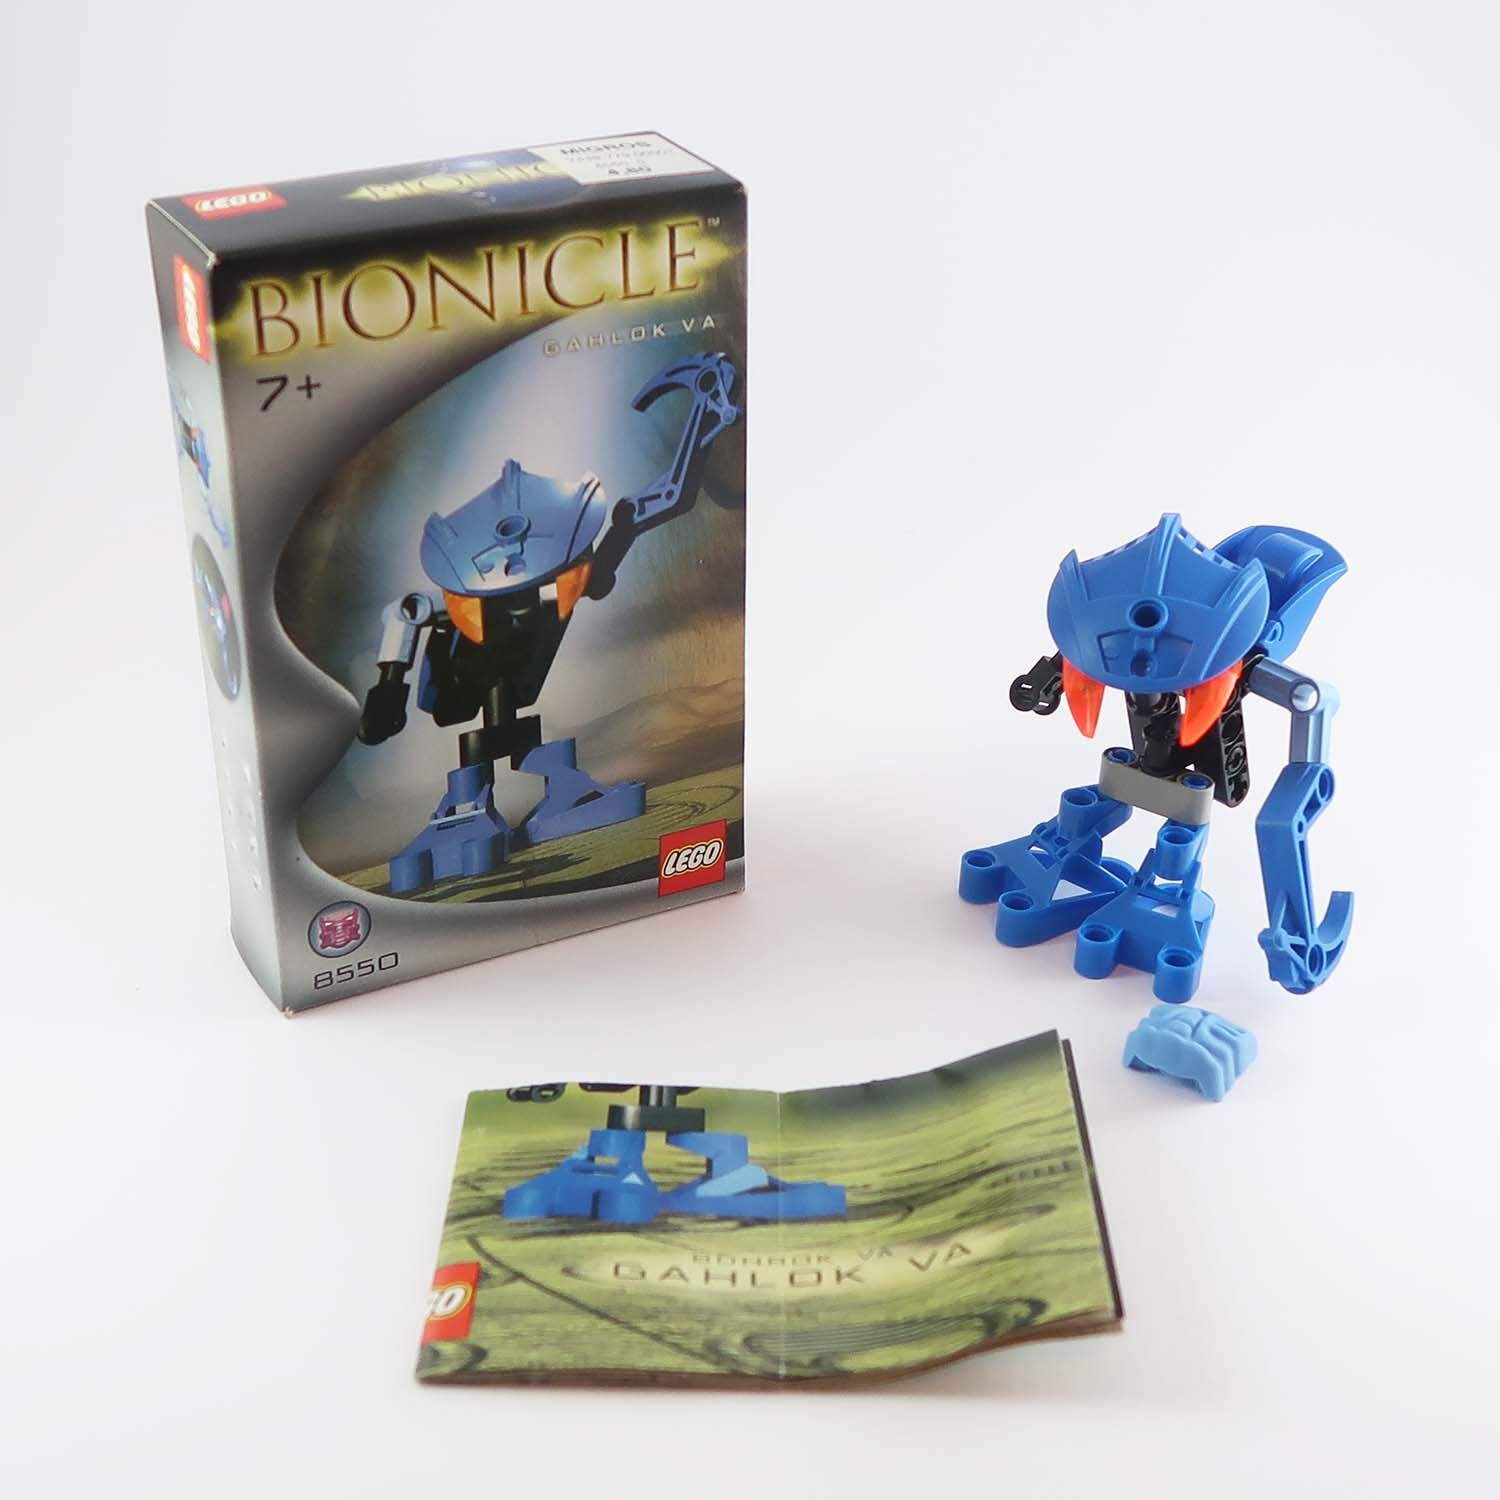 LEGO Bionicle - Gahlok Va (8550)